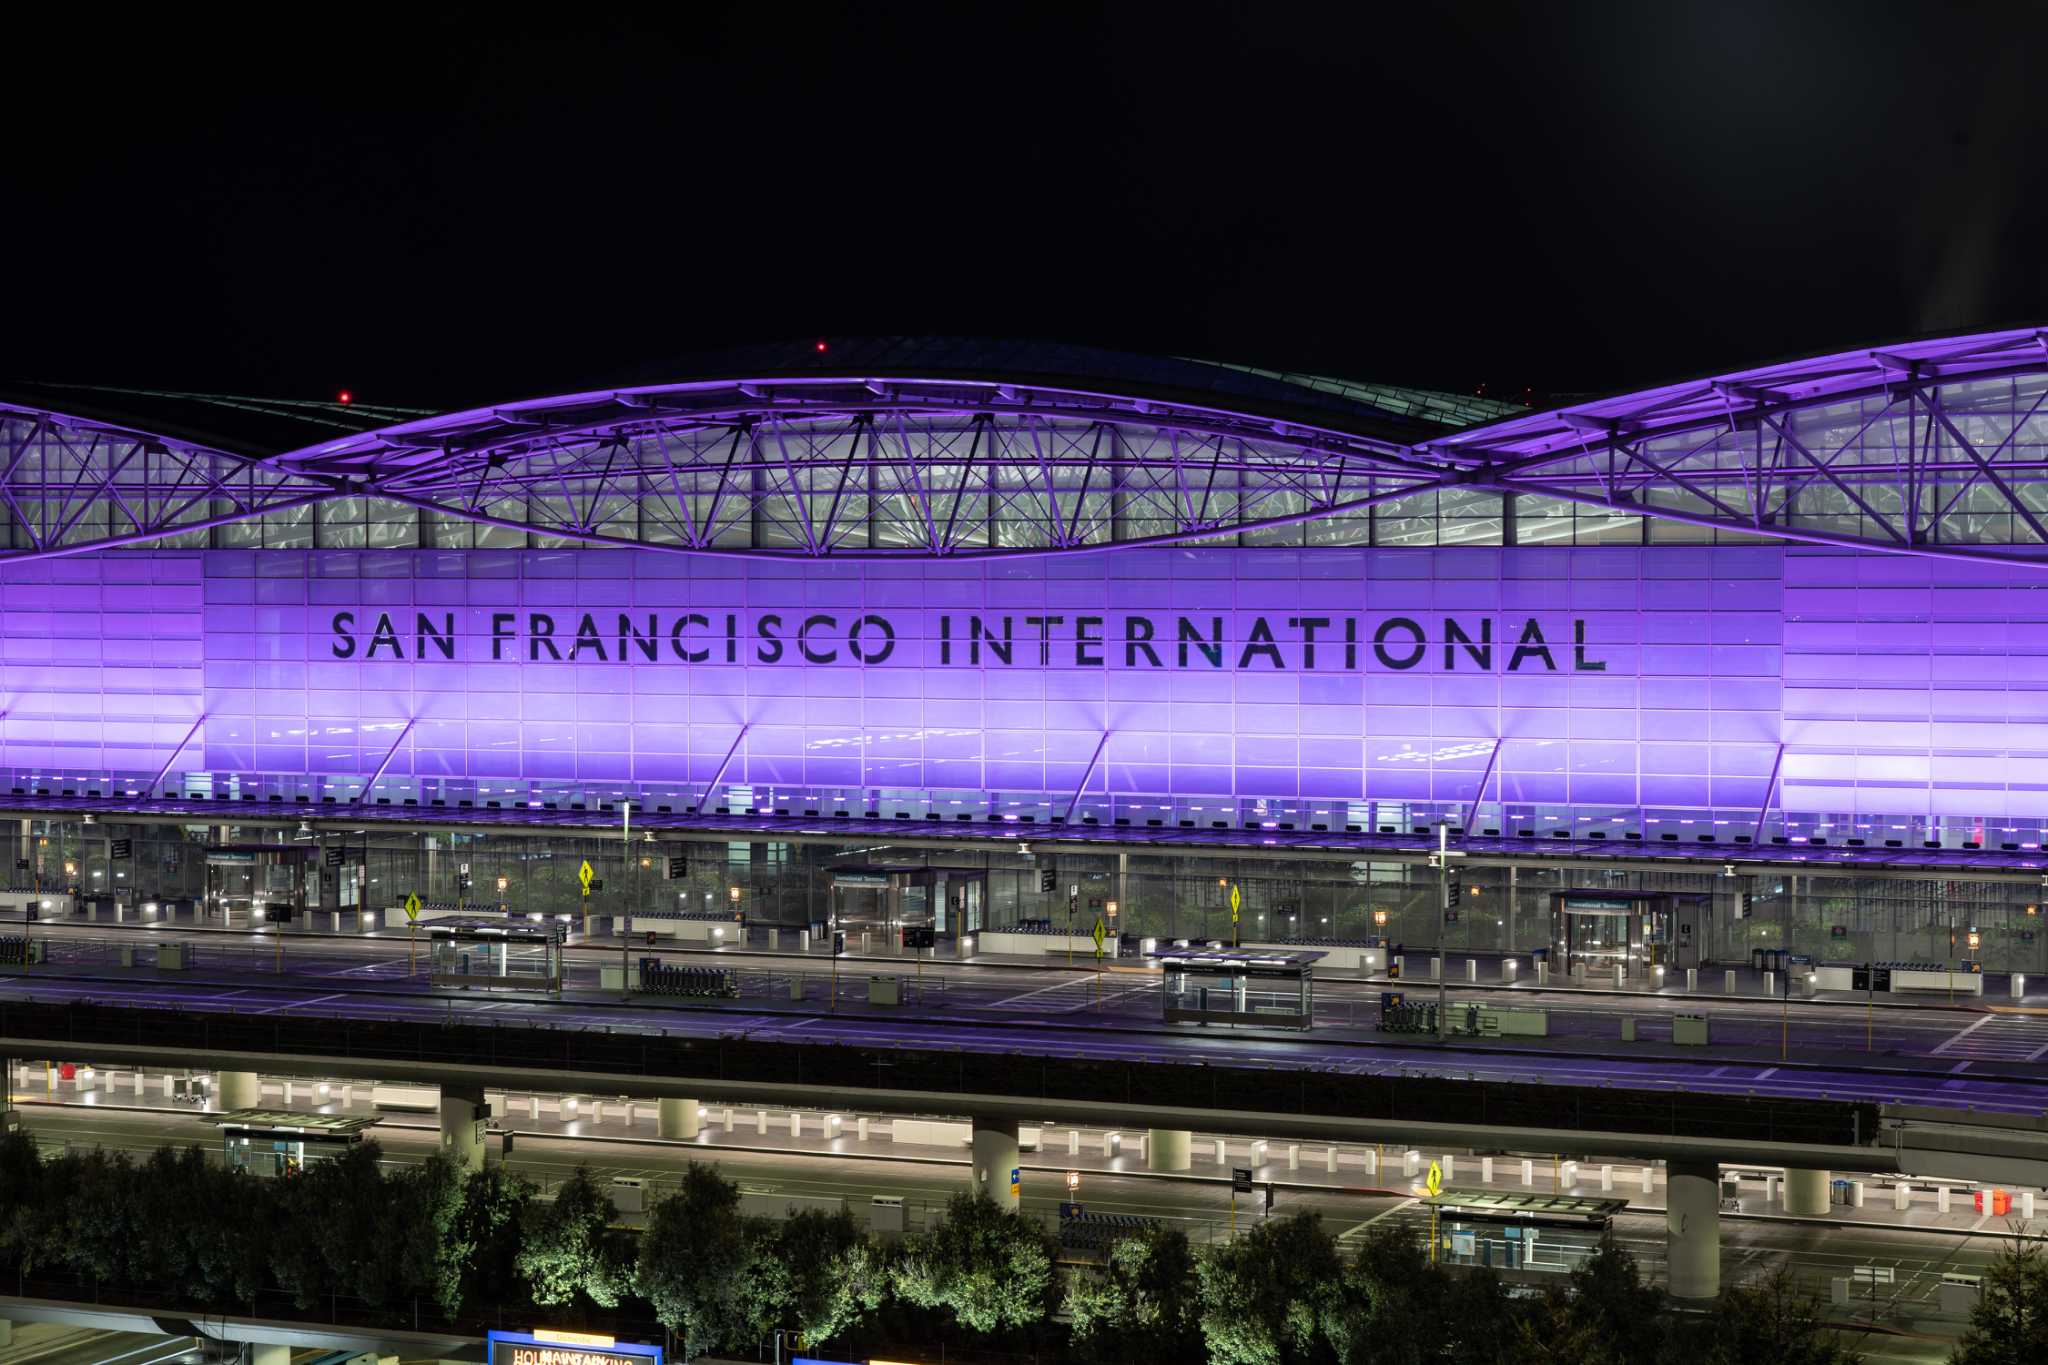 旧金山国际机场国际航站楼将被更名为黛安·范斯坦航站楼